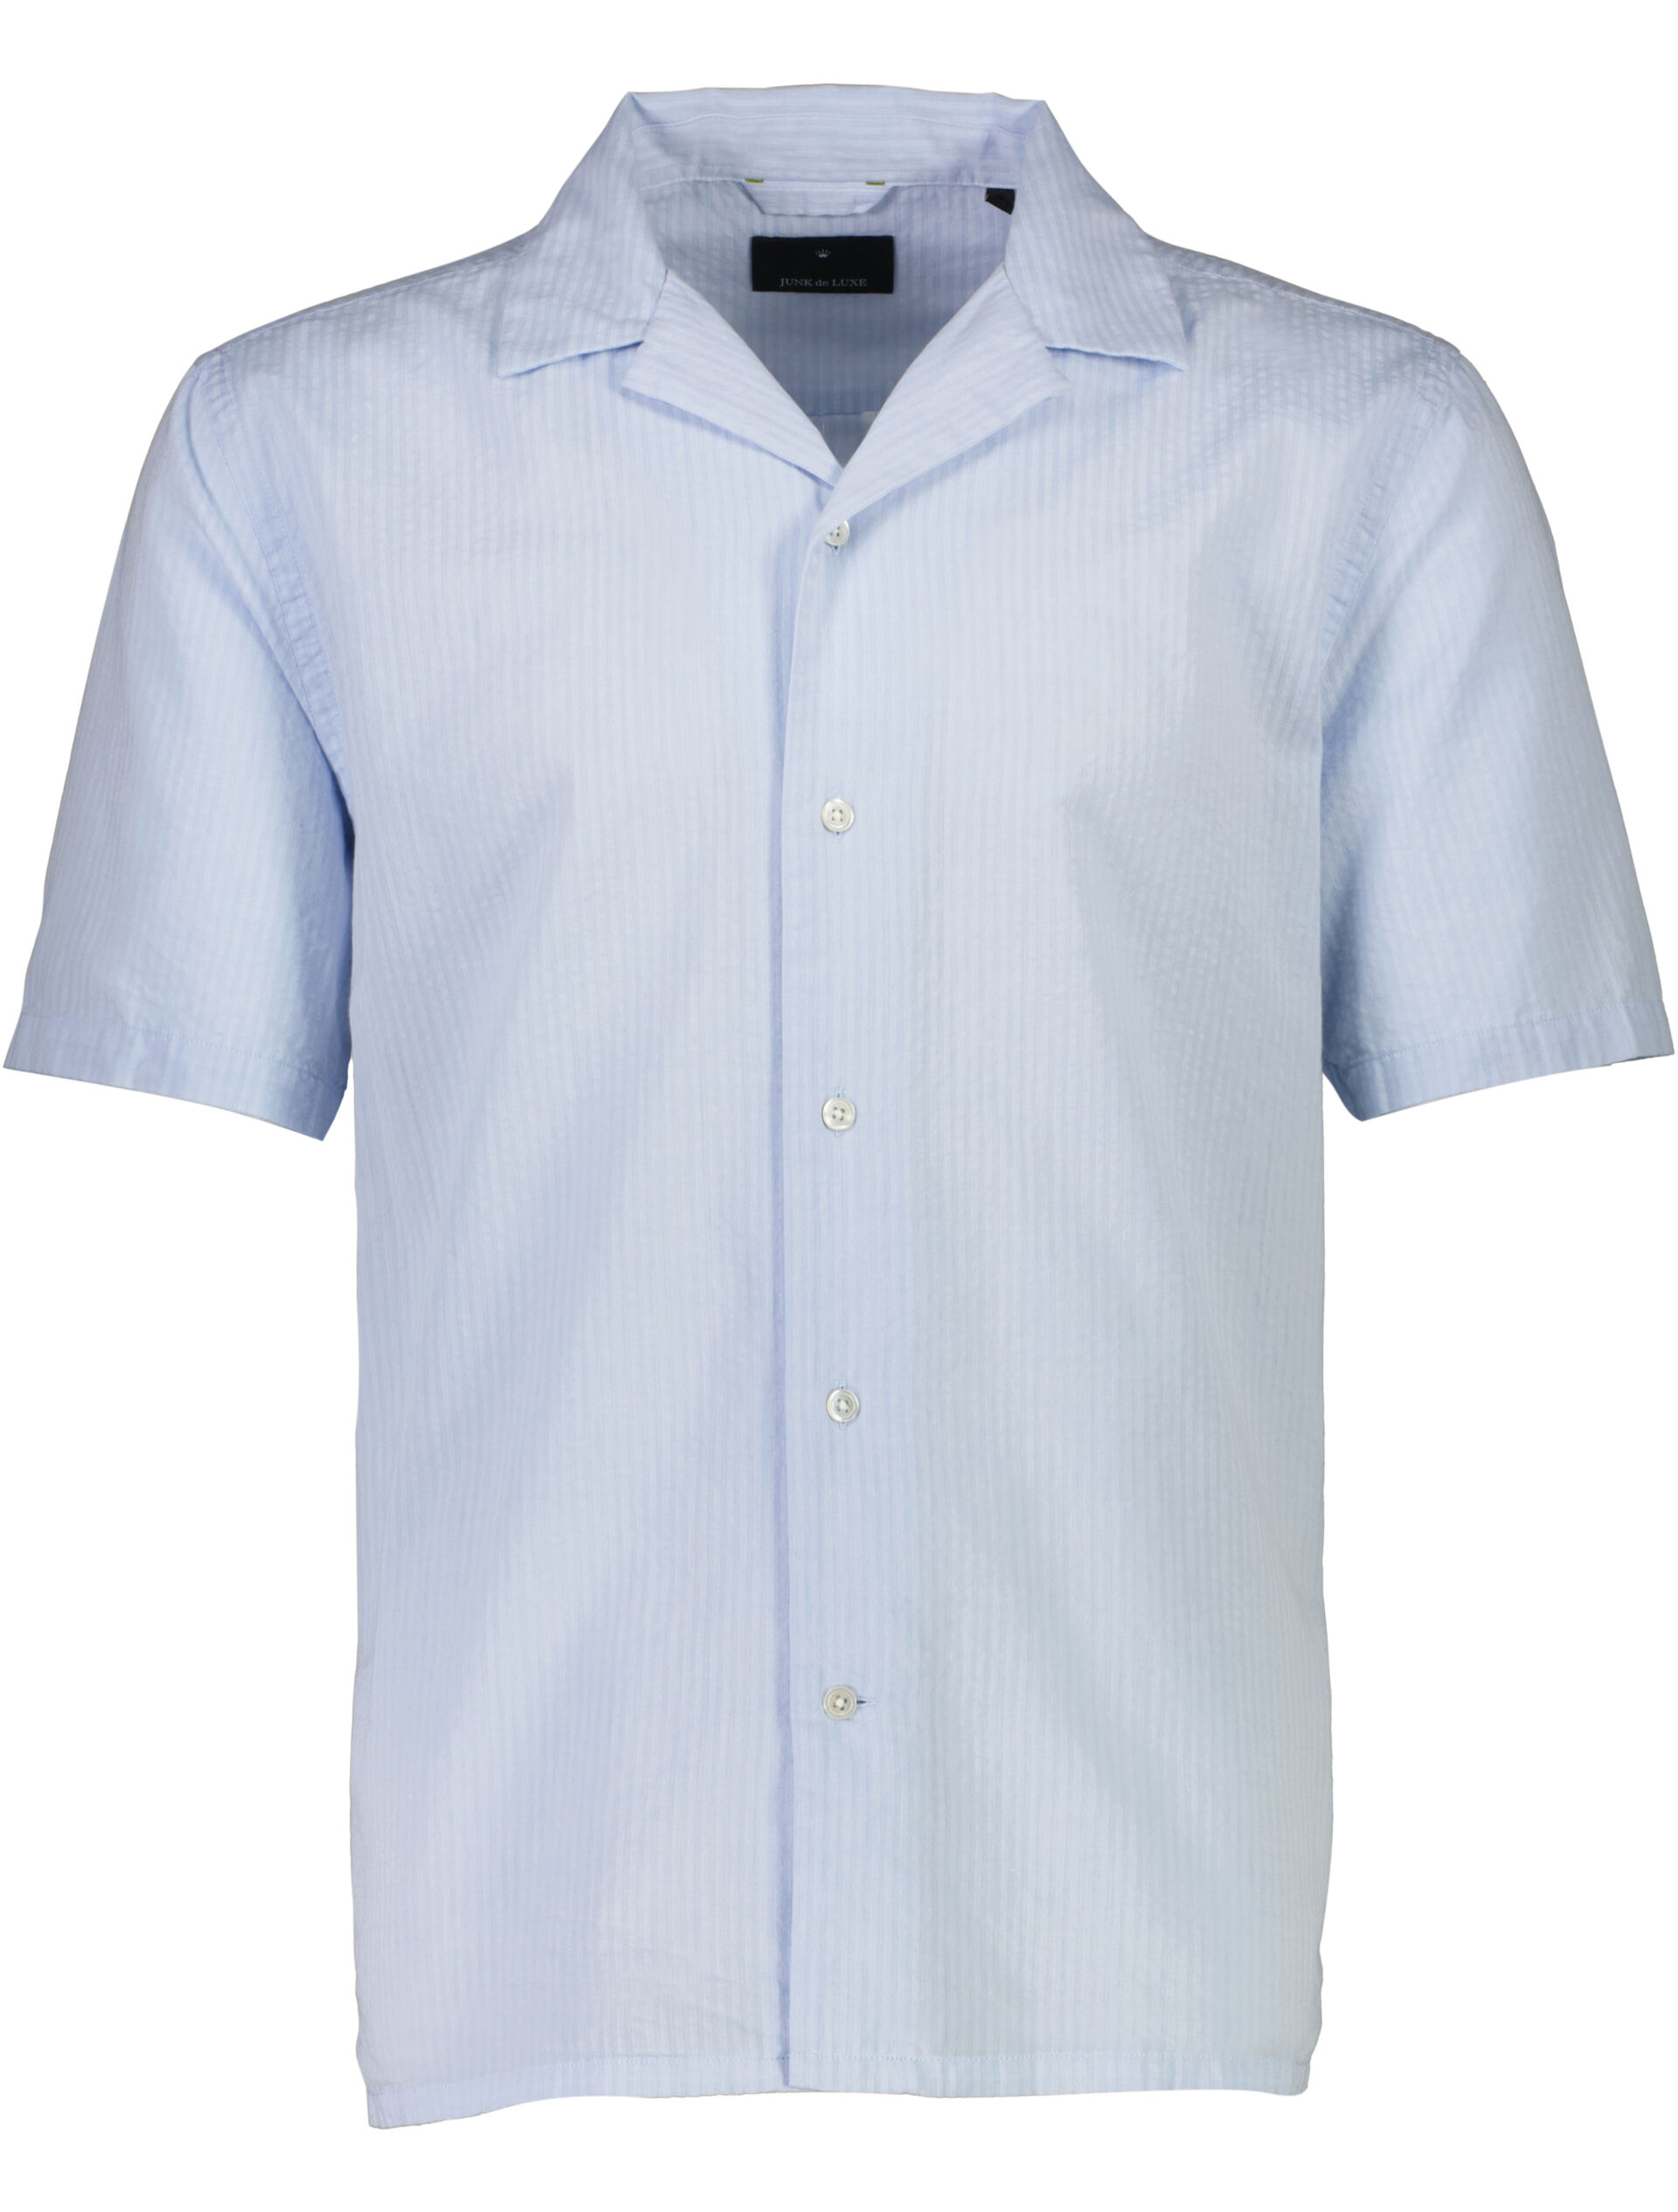 Casual shirt Casual shirt Blue 60-202083